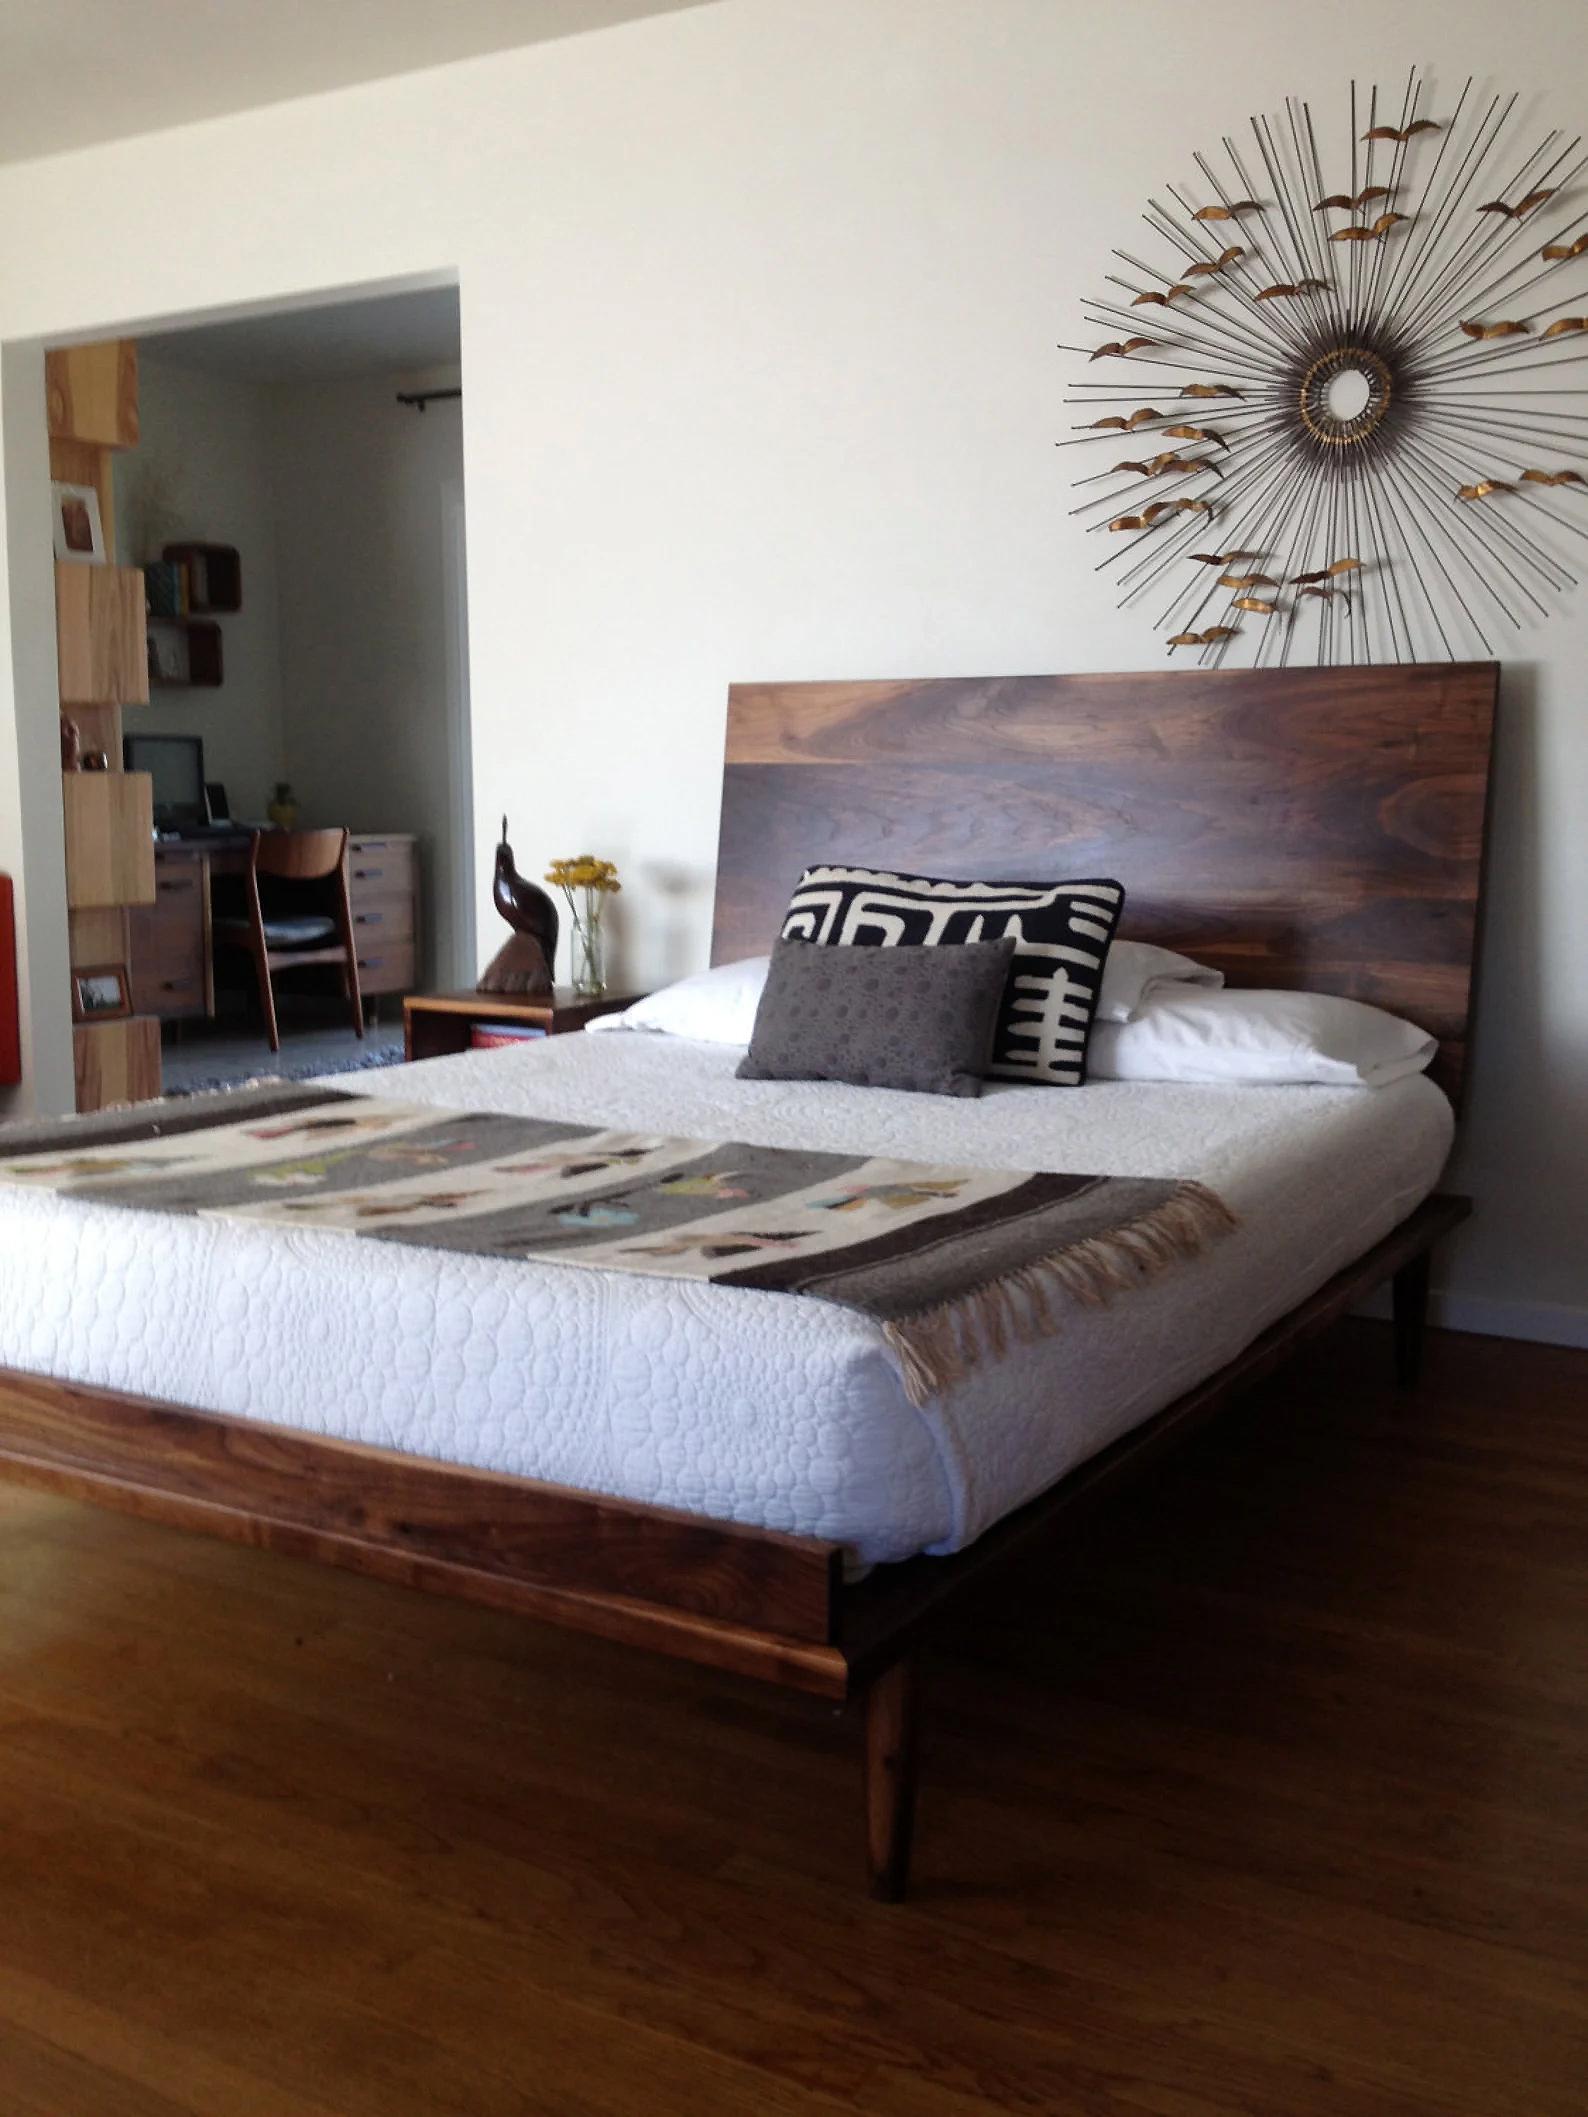 Dieses Bett ist meine eigene Interpretation des ikonischen George Nelson Bettes aus der Blütezeit des Mid Century Modern. Es ist aus massivem Nussbaumholz gefertigt und besteht aus einer dünnen Plattform, die auf gedrechselten Beinen ruht, und einem